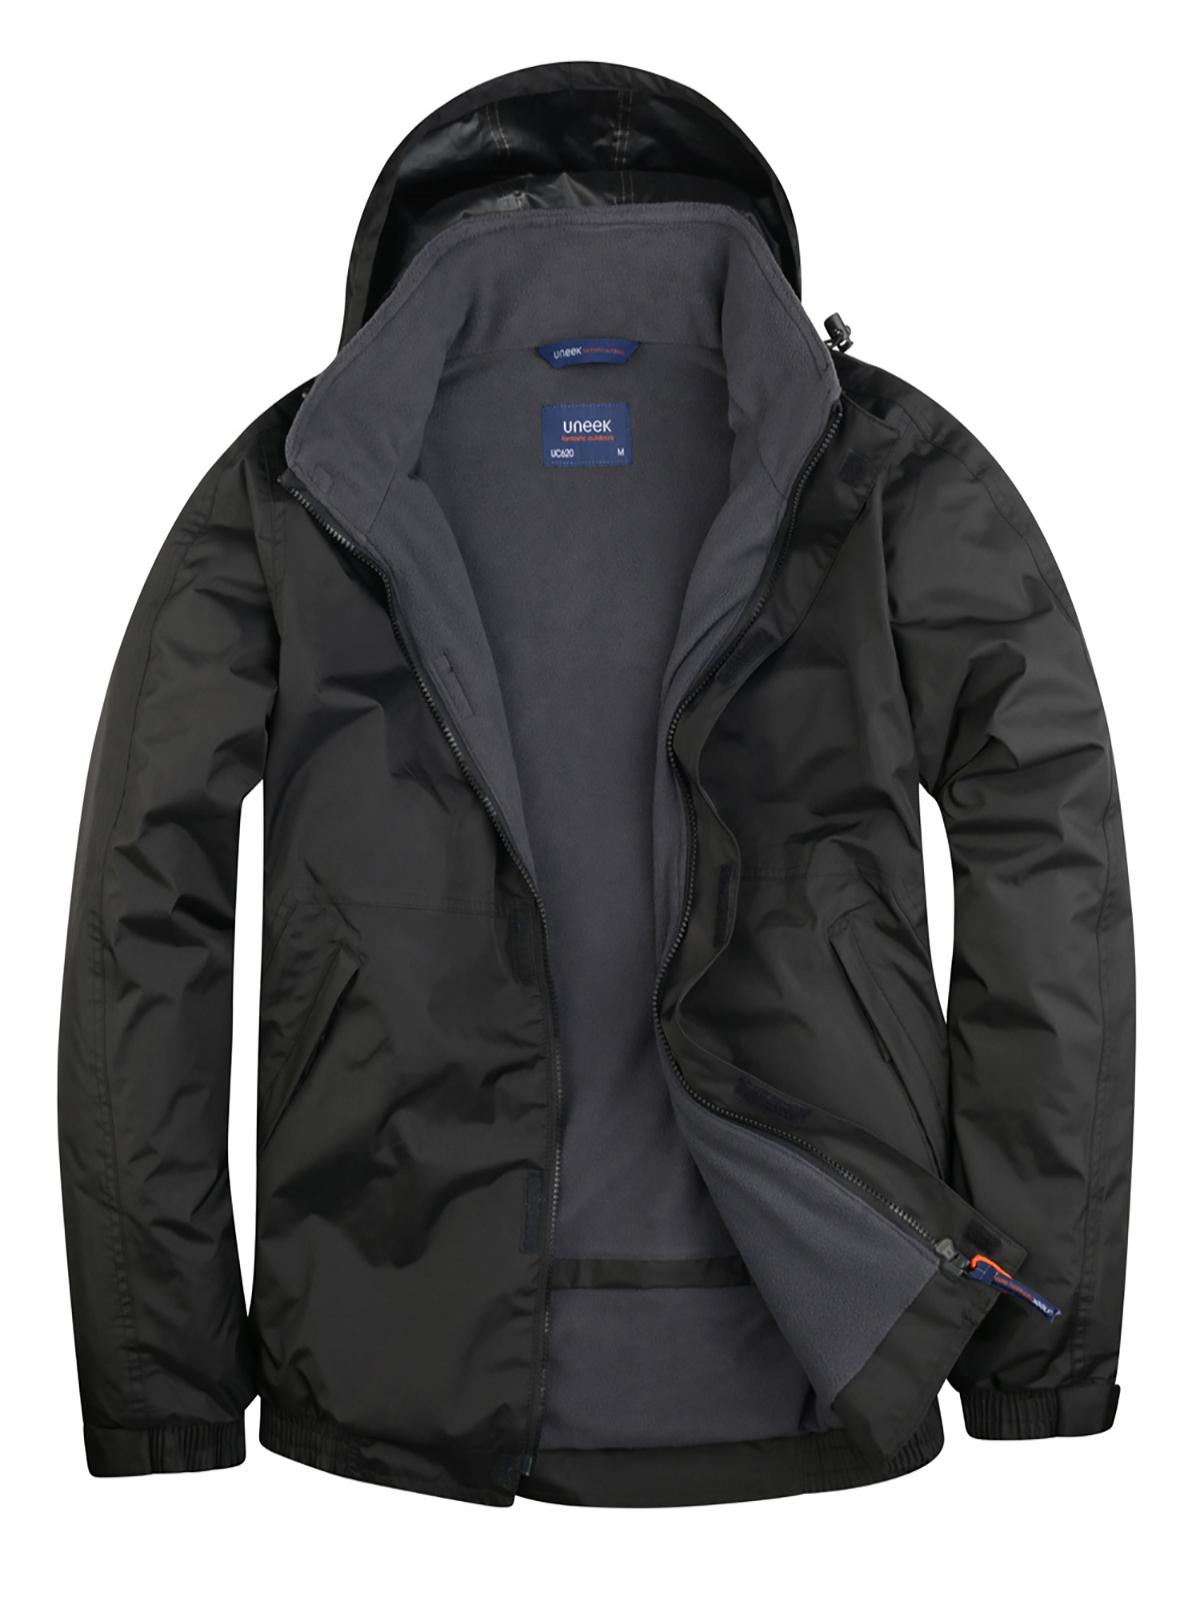 Uneek Premium Outdoor Jacket UC620 - Black/Grey